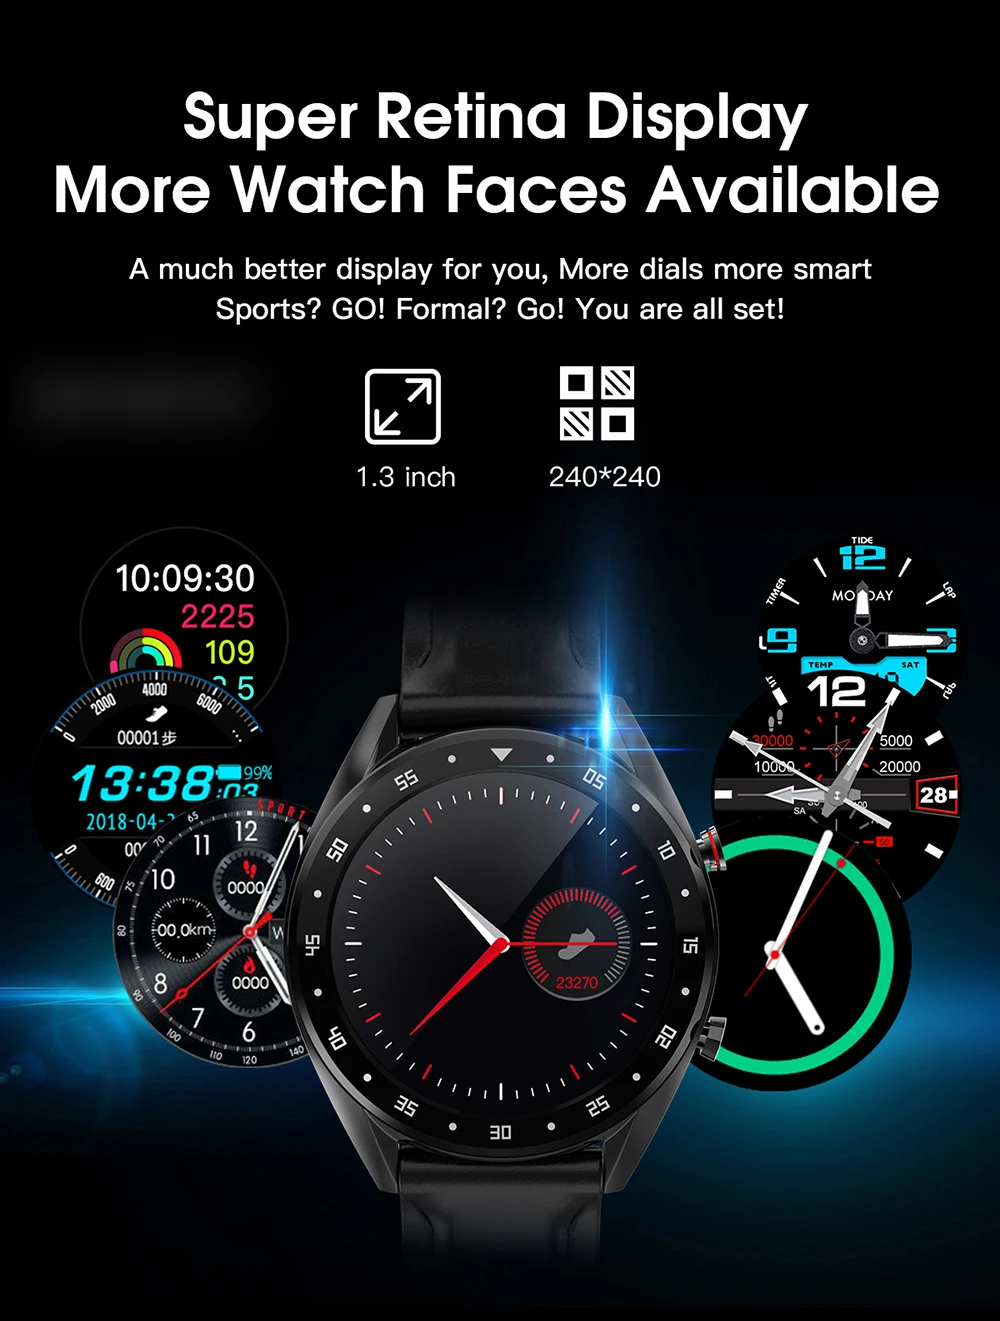 Microwear L7 Smartwatch IP68 Водонепроницаемый Фитнес-Браслет трекер наручные часы ЭКГ монитор сердечного ритма напоминание о звонках Смарт-часы для мужчин